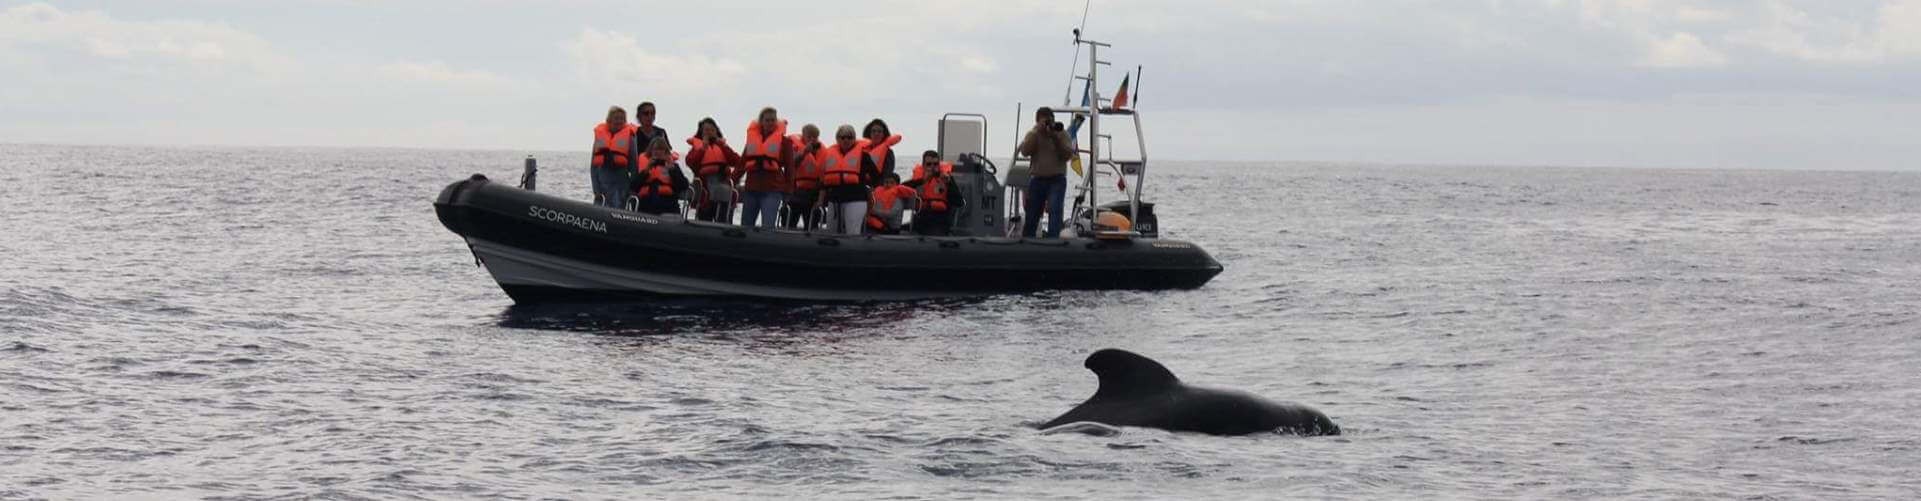 Observação de Golfinhos e Baleias desde Machico, Madeira